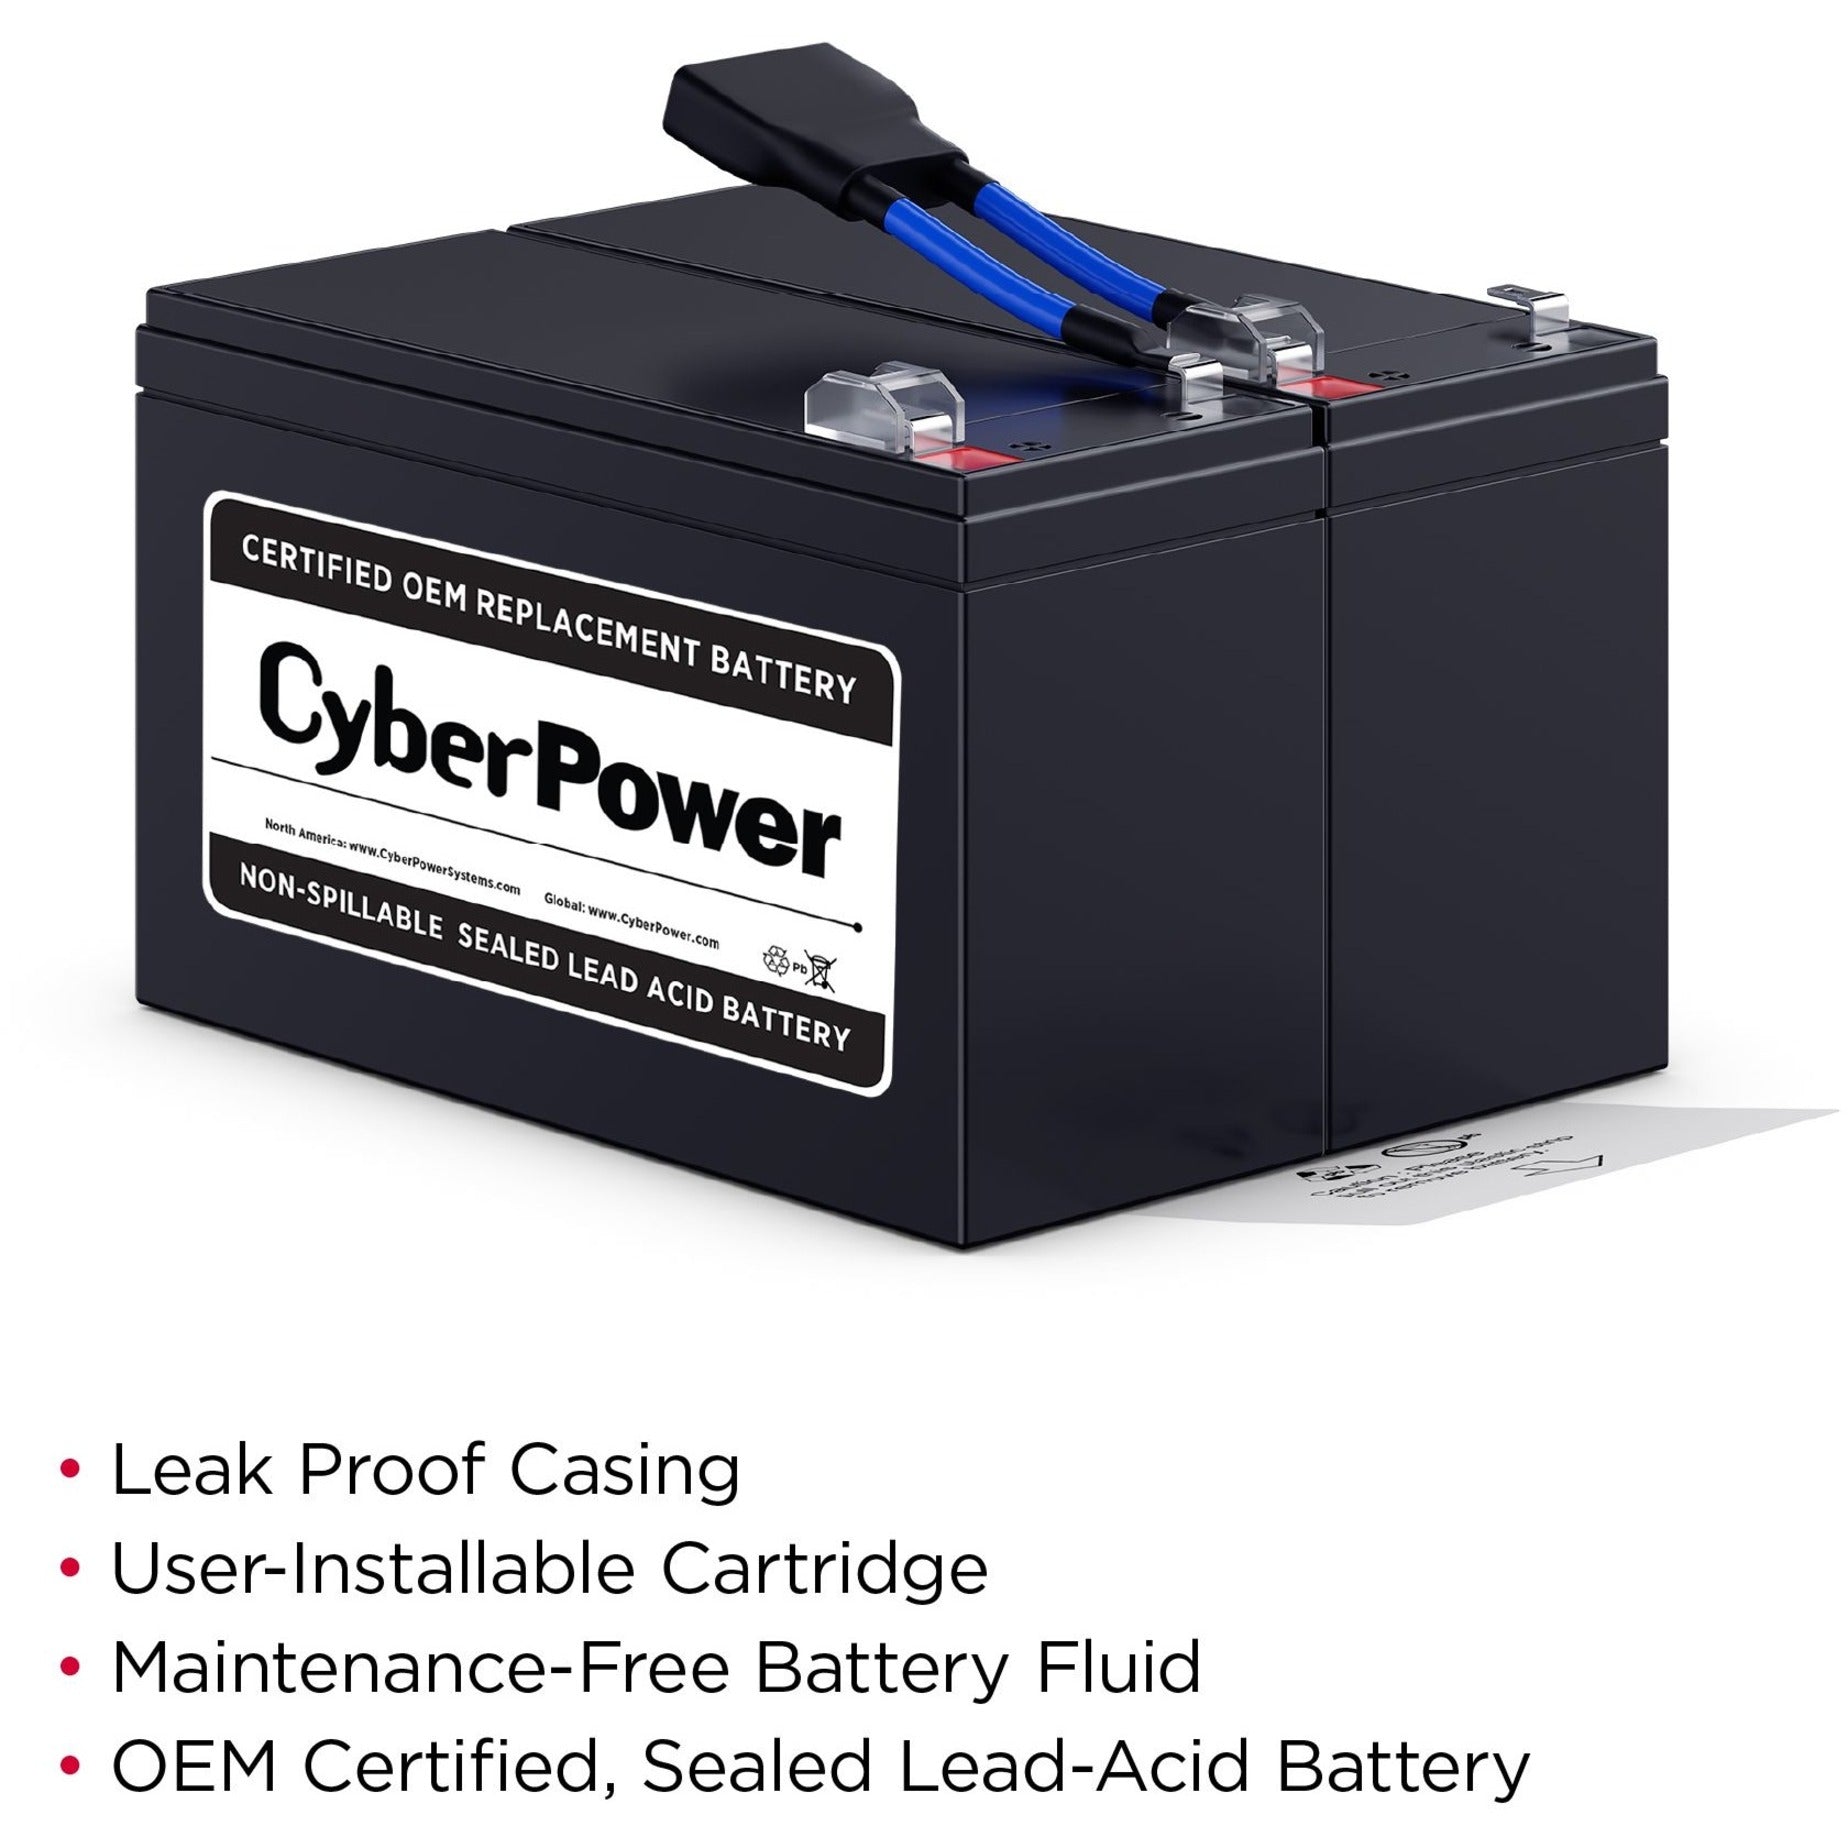 CyberPower Kit de Batería de Repuesto RB1290X2B 12V CC 9000mAh Ácido de Plomo a Prueba de Fugas. Marca: CyberPower.